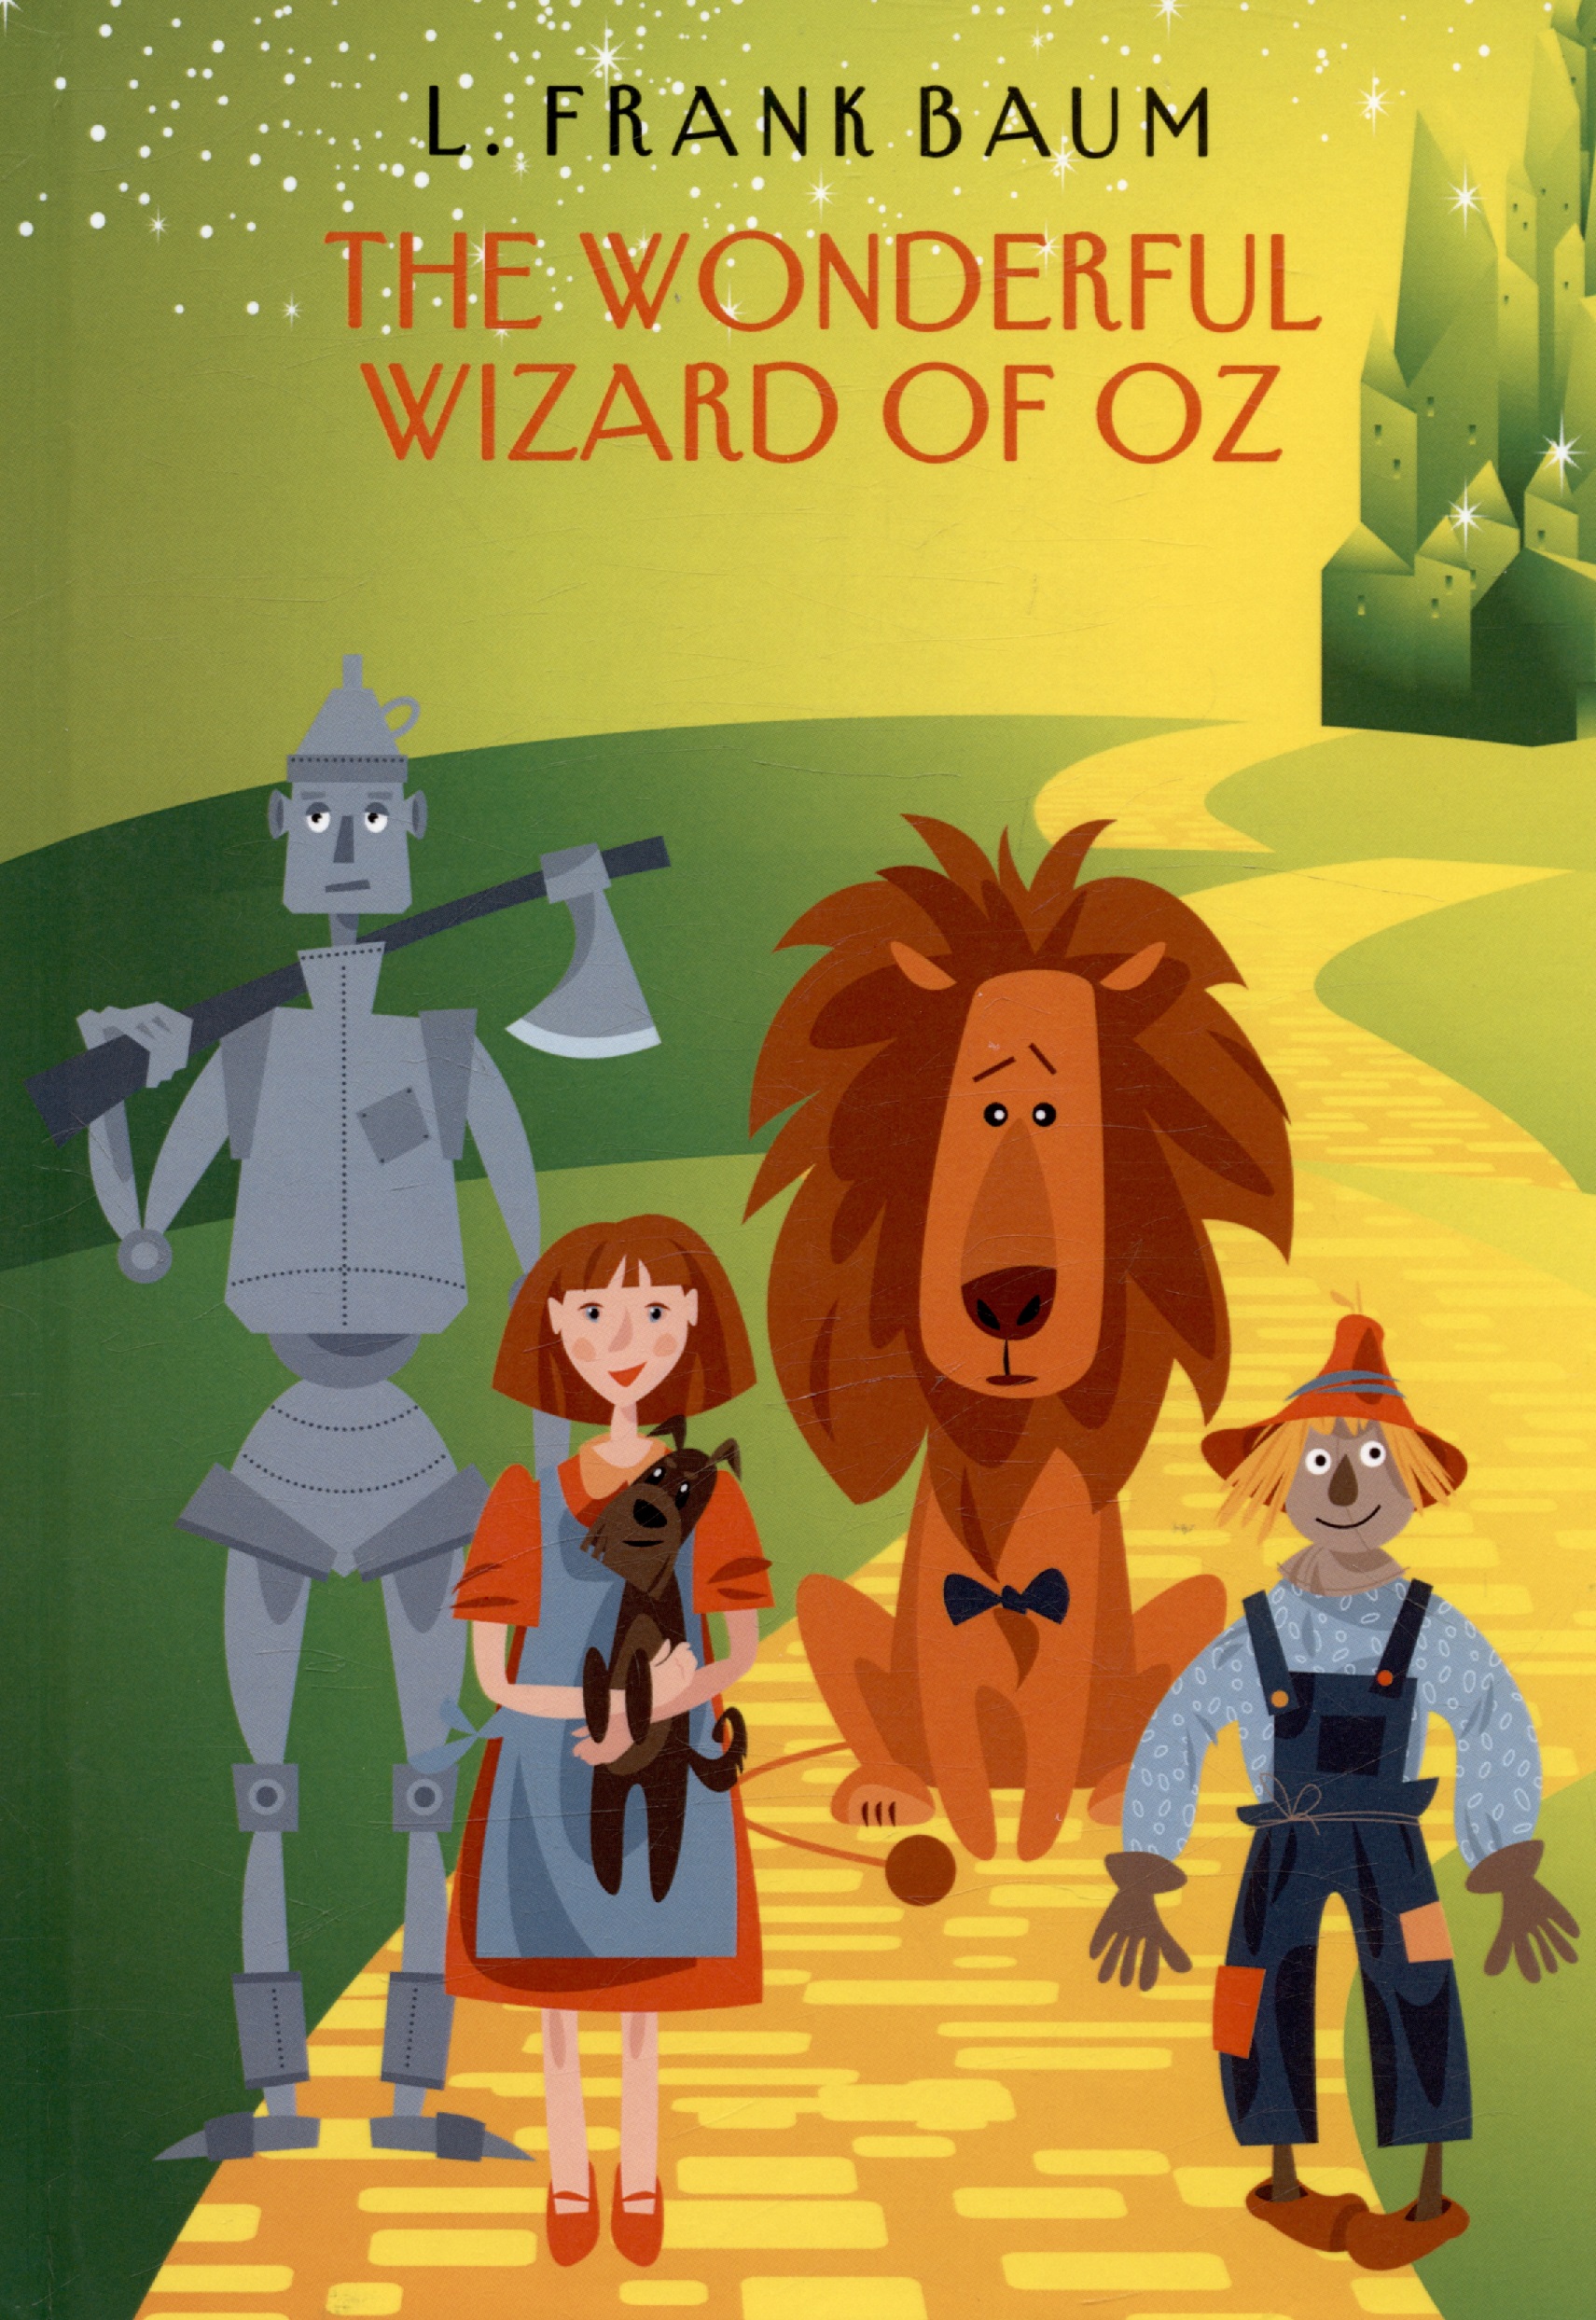 Баум Лаймен Фрэнк Лаймен The Wonderful Wizard of Oz баум лаймен фрэнк лаймен the wonderful wizard of oz